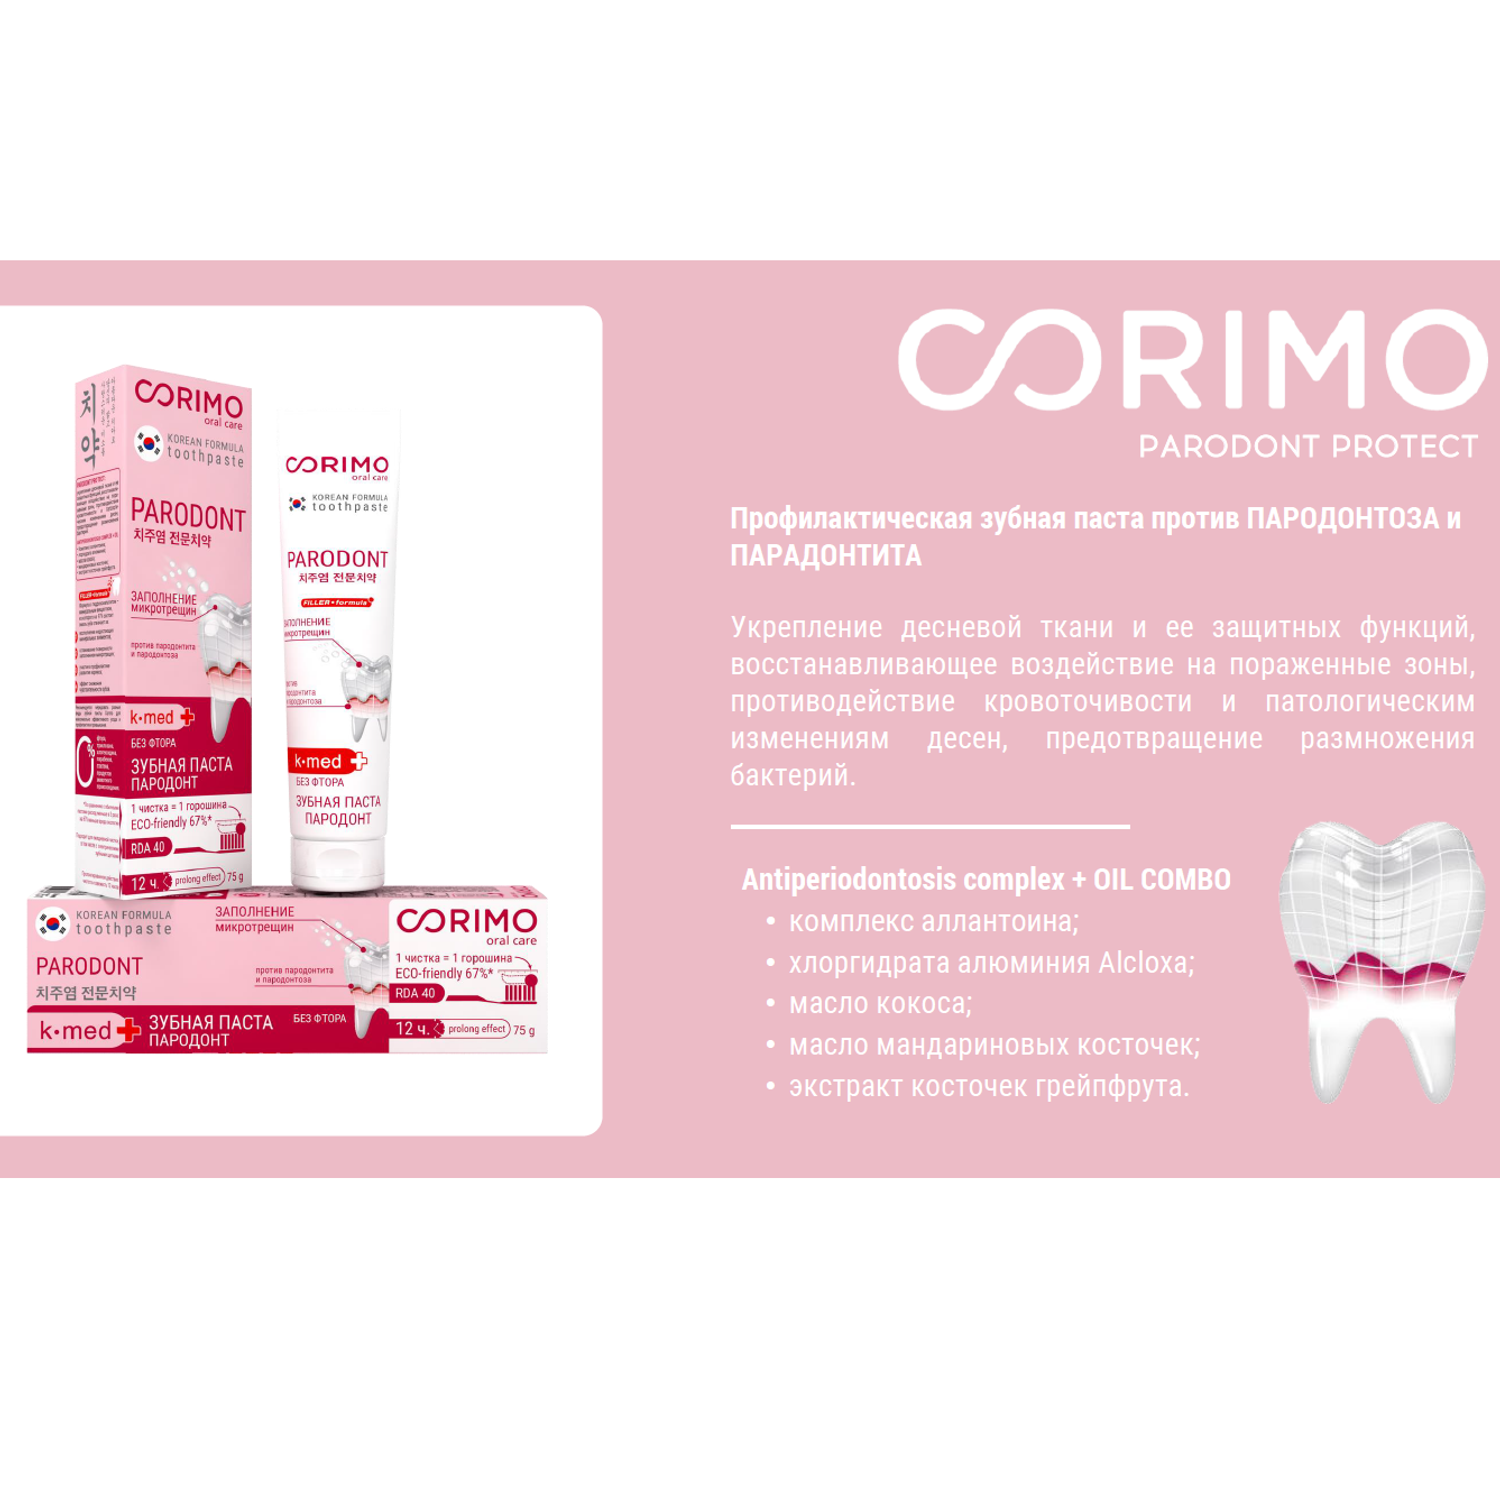 Зубная паста CORIMO профилактическая против пародонтоза и парадонтита 75 г - фото 3